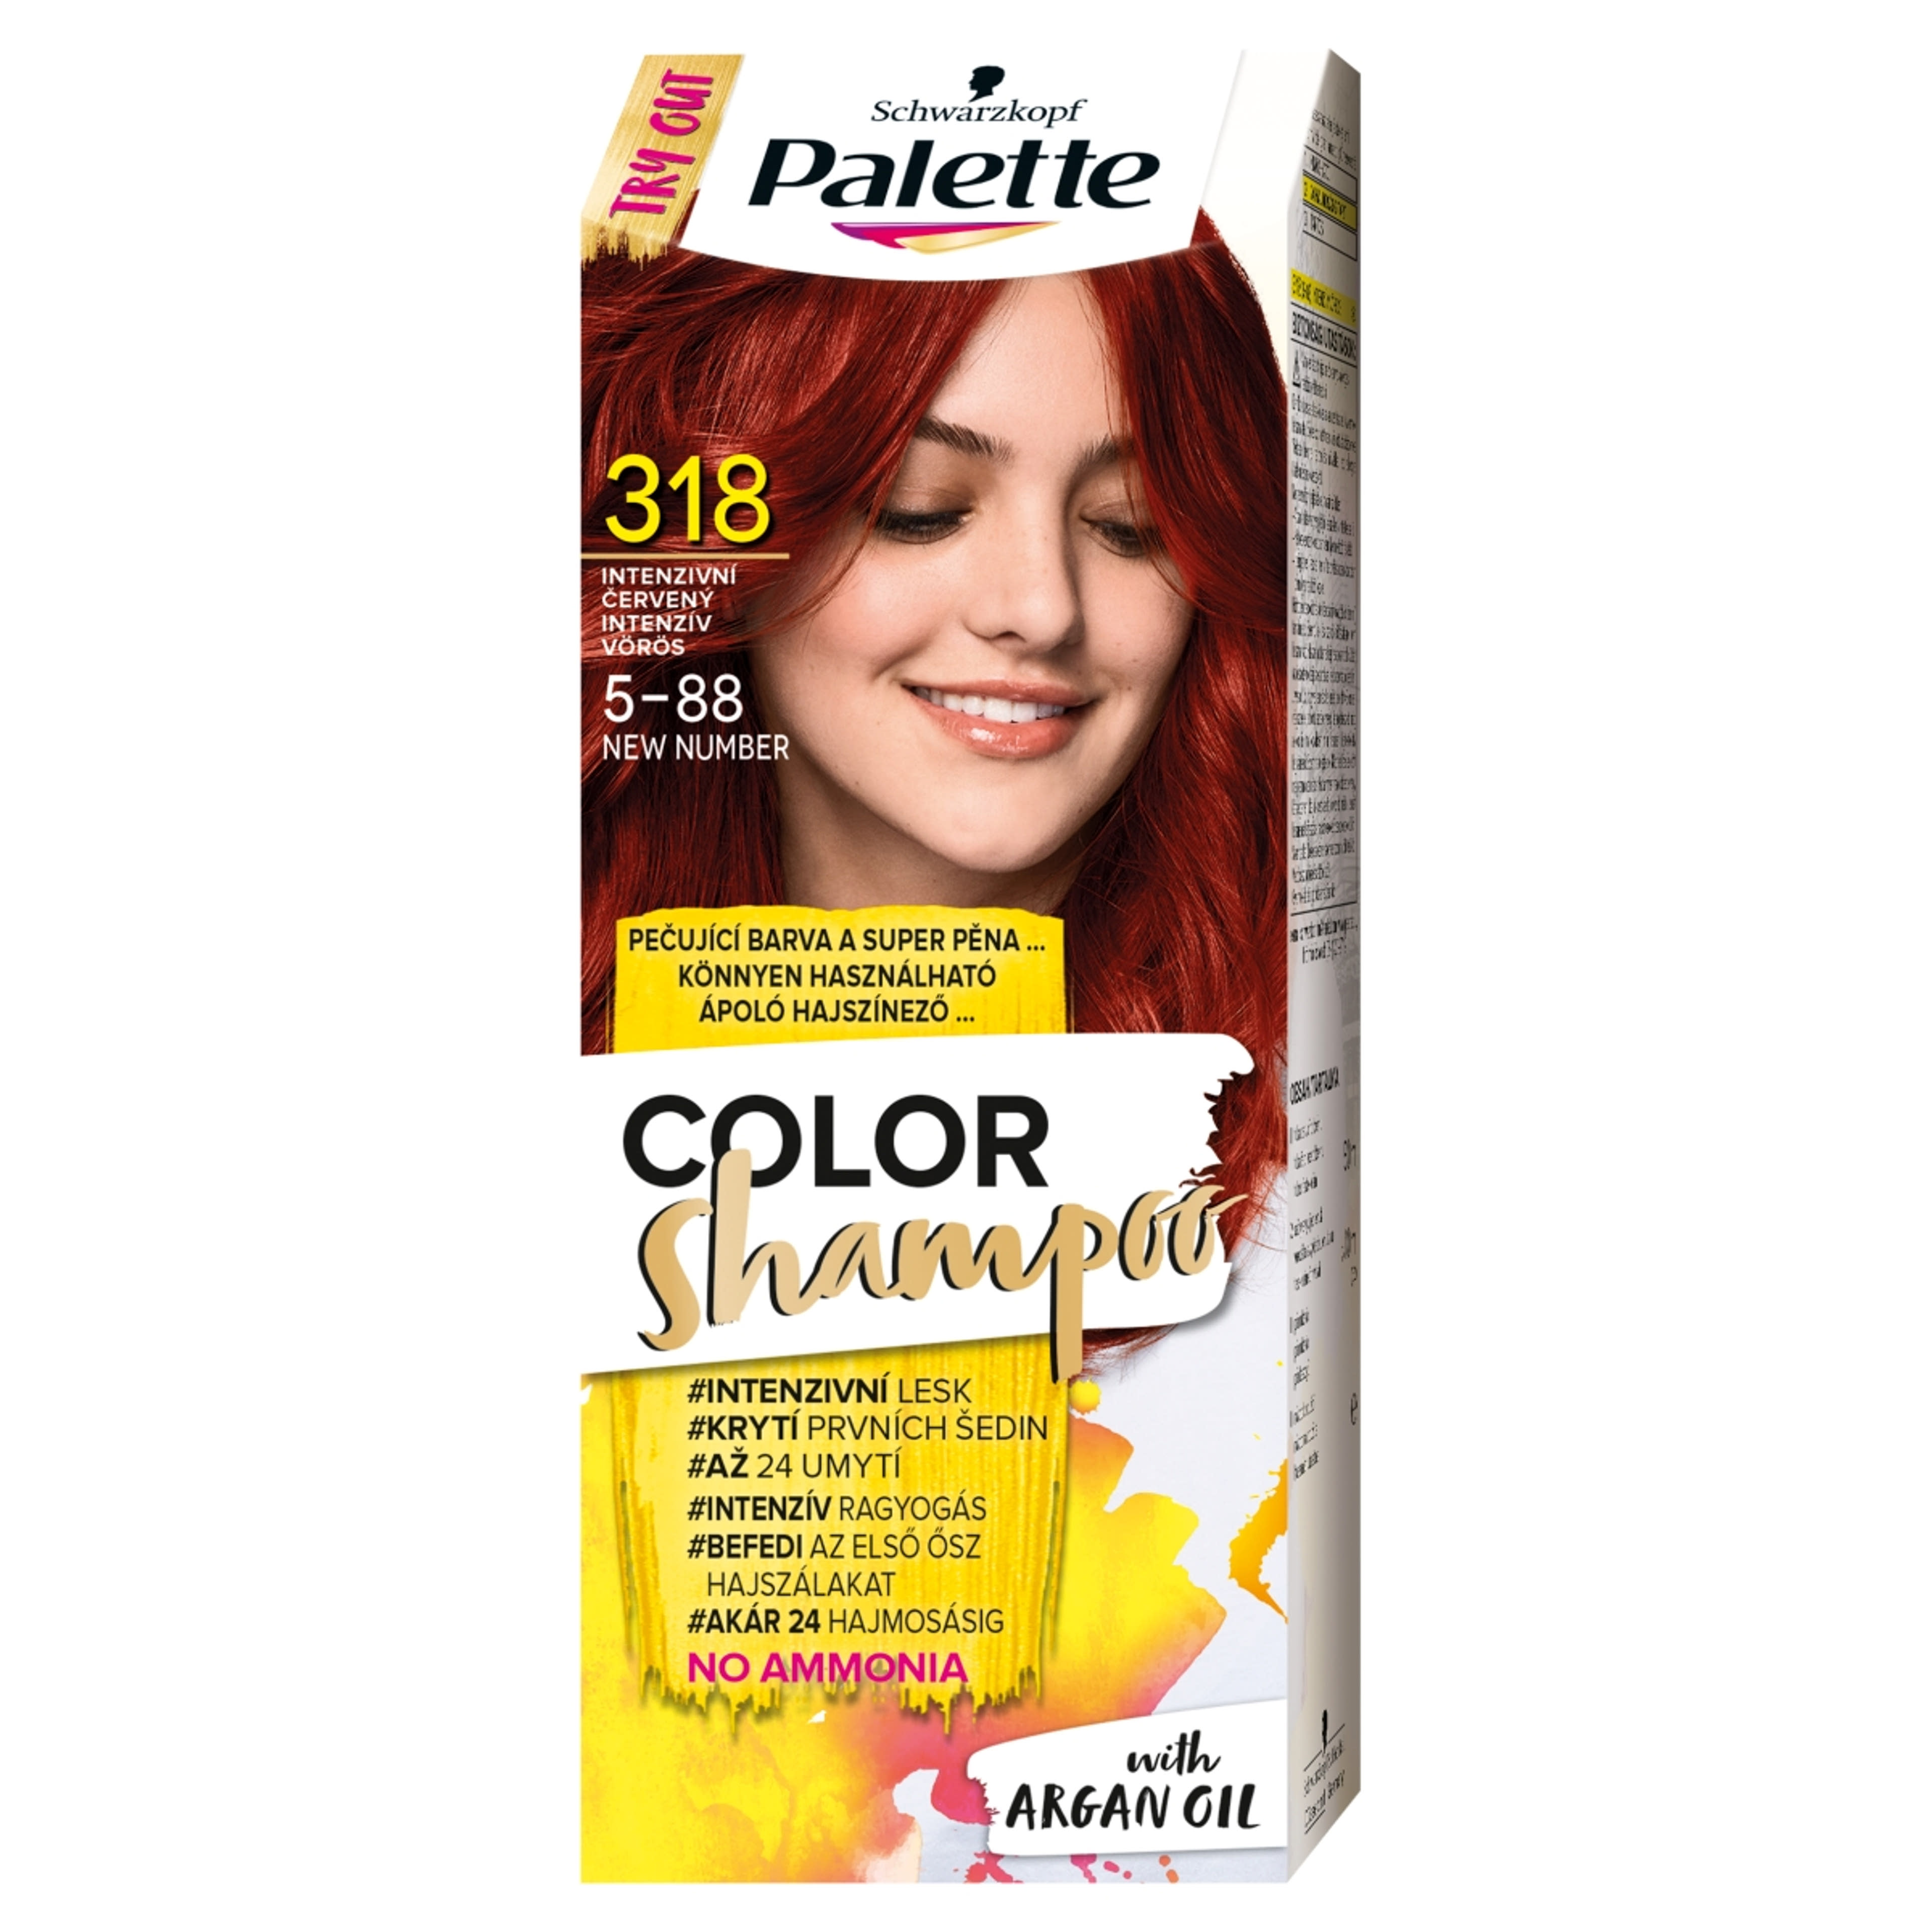 Schwarzkopf Palette Color Shampoo hajfesték 318 intenzív vörös - 1 db-1